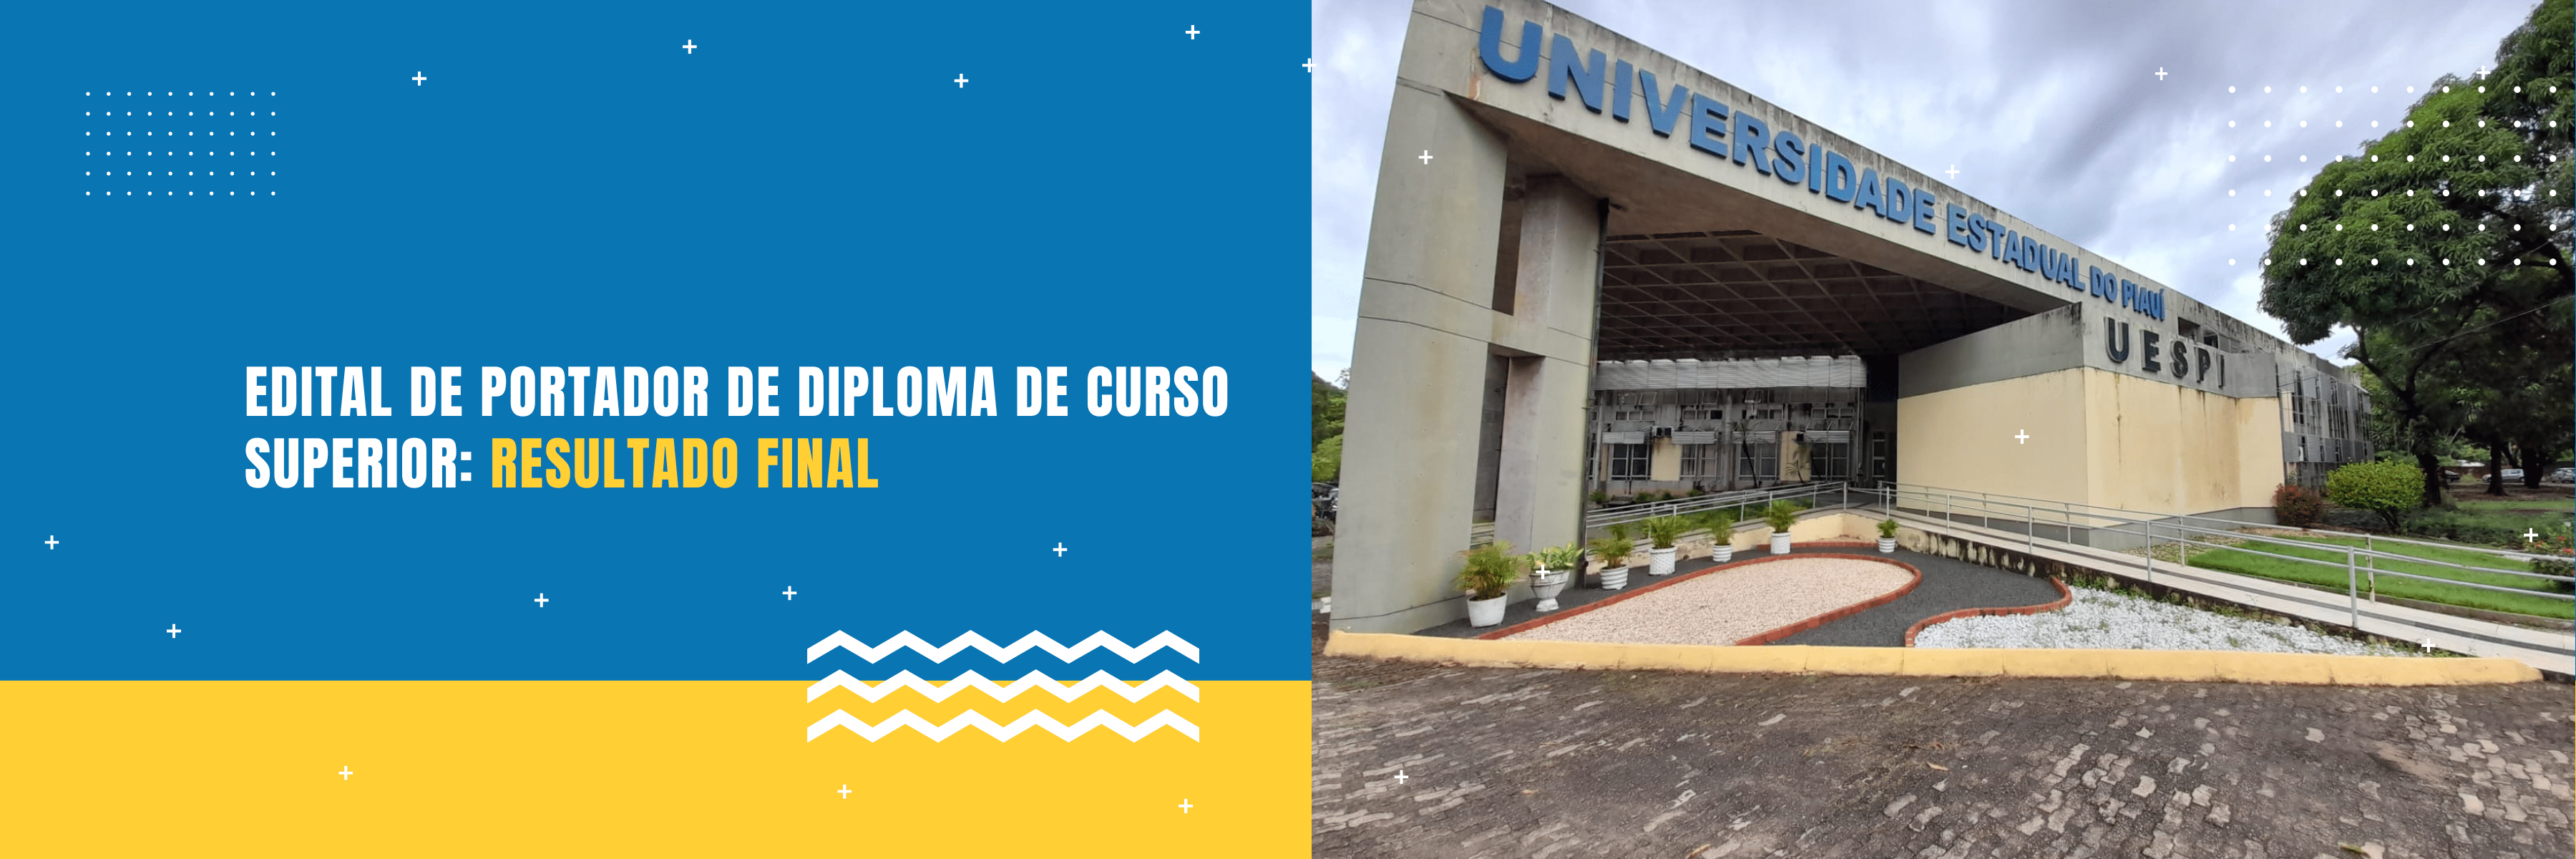 UFPI é a única Universidade pública do Brasil a oferecer a